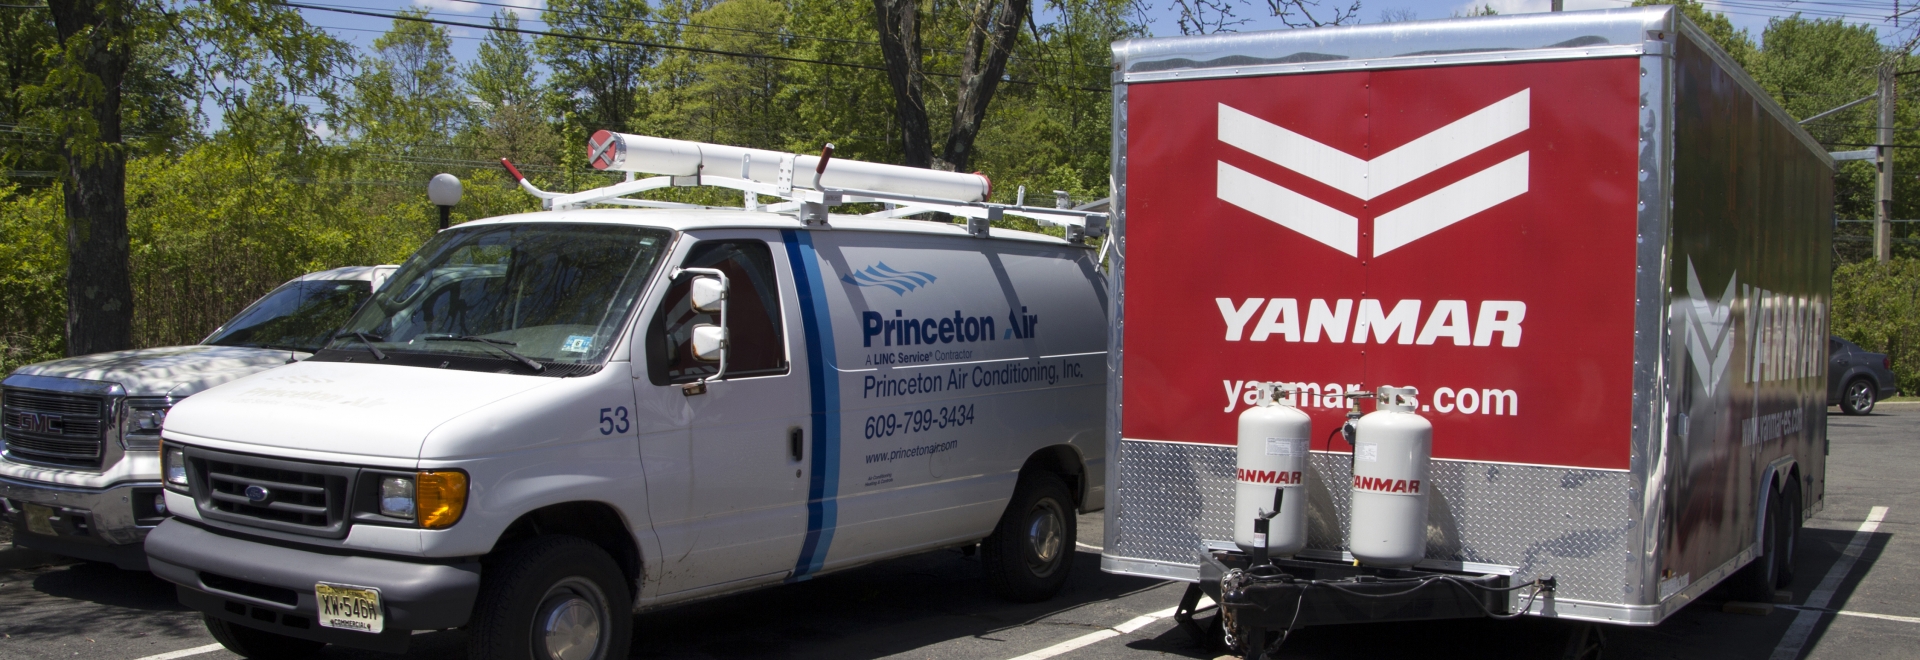 Princeton Work Vehicle Next To Yanmar Trailer